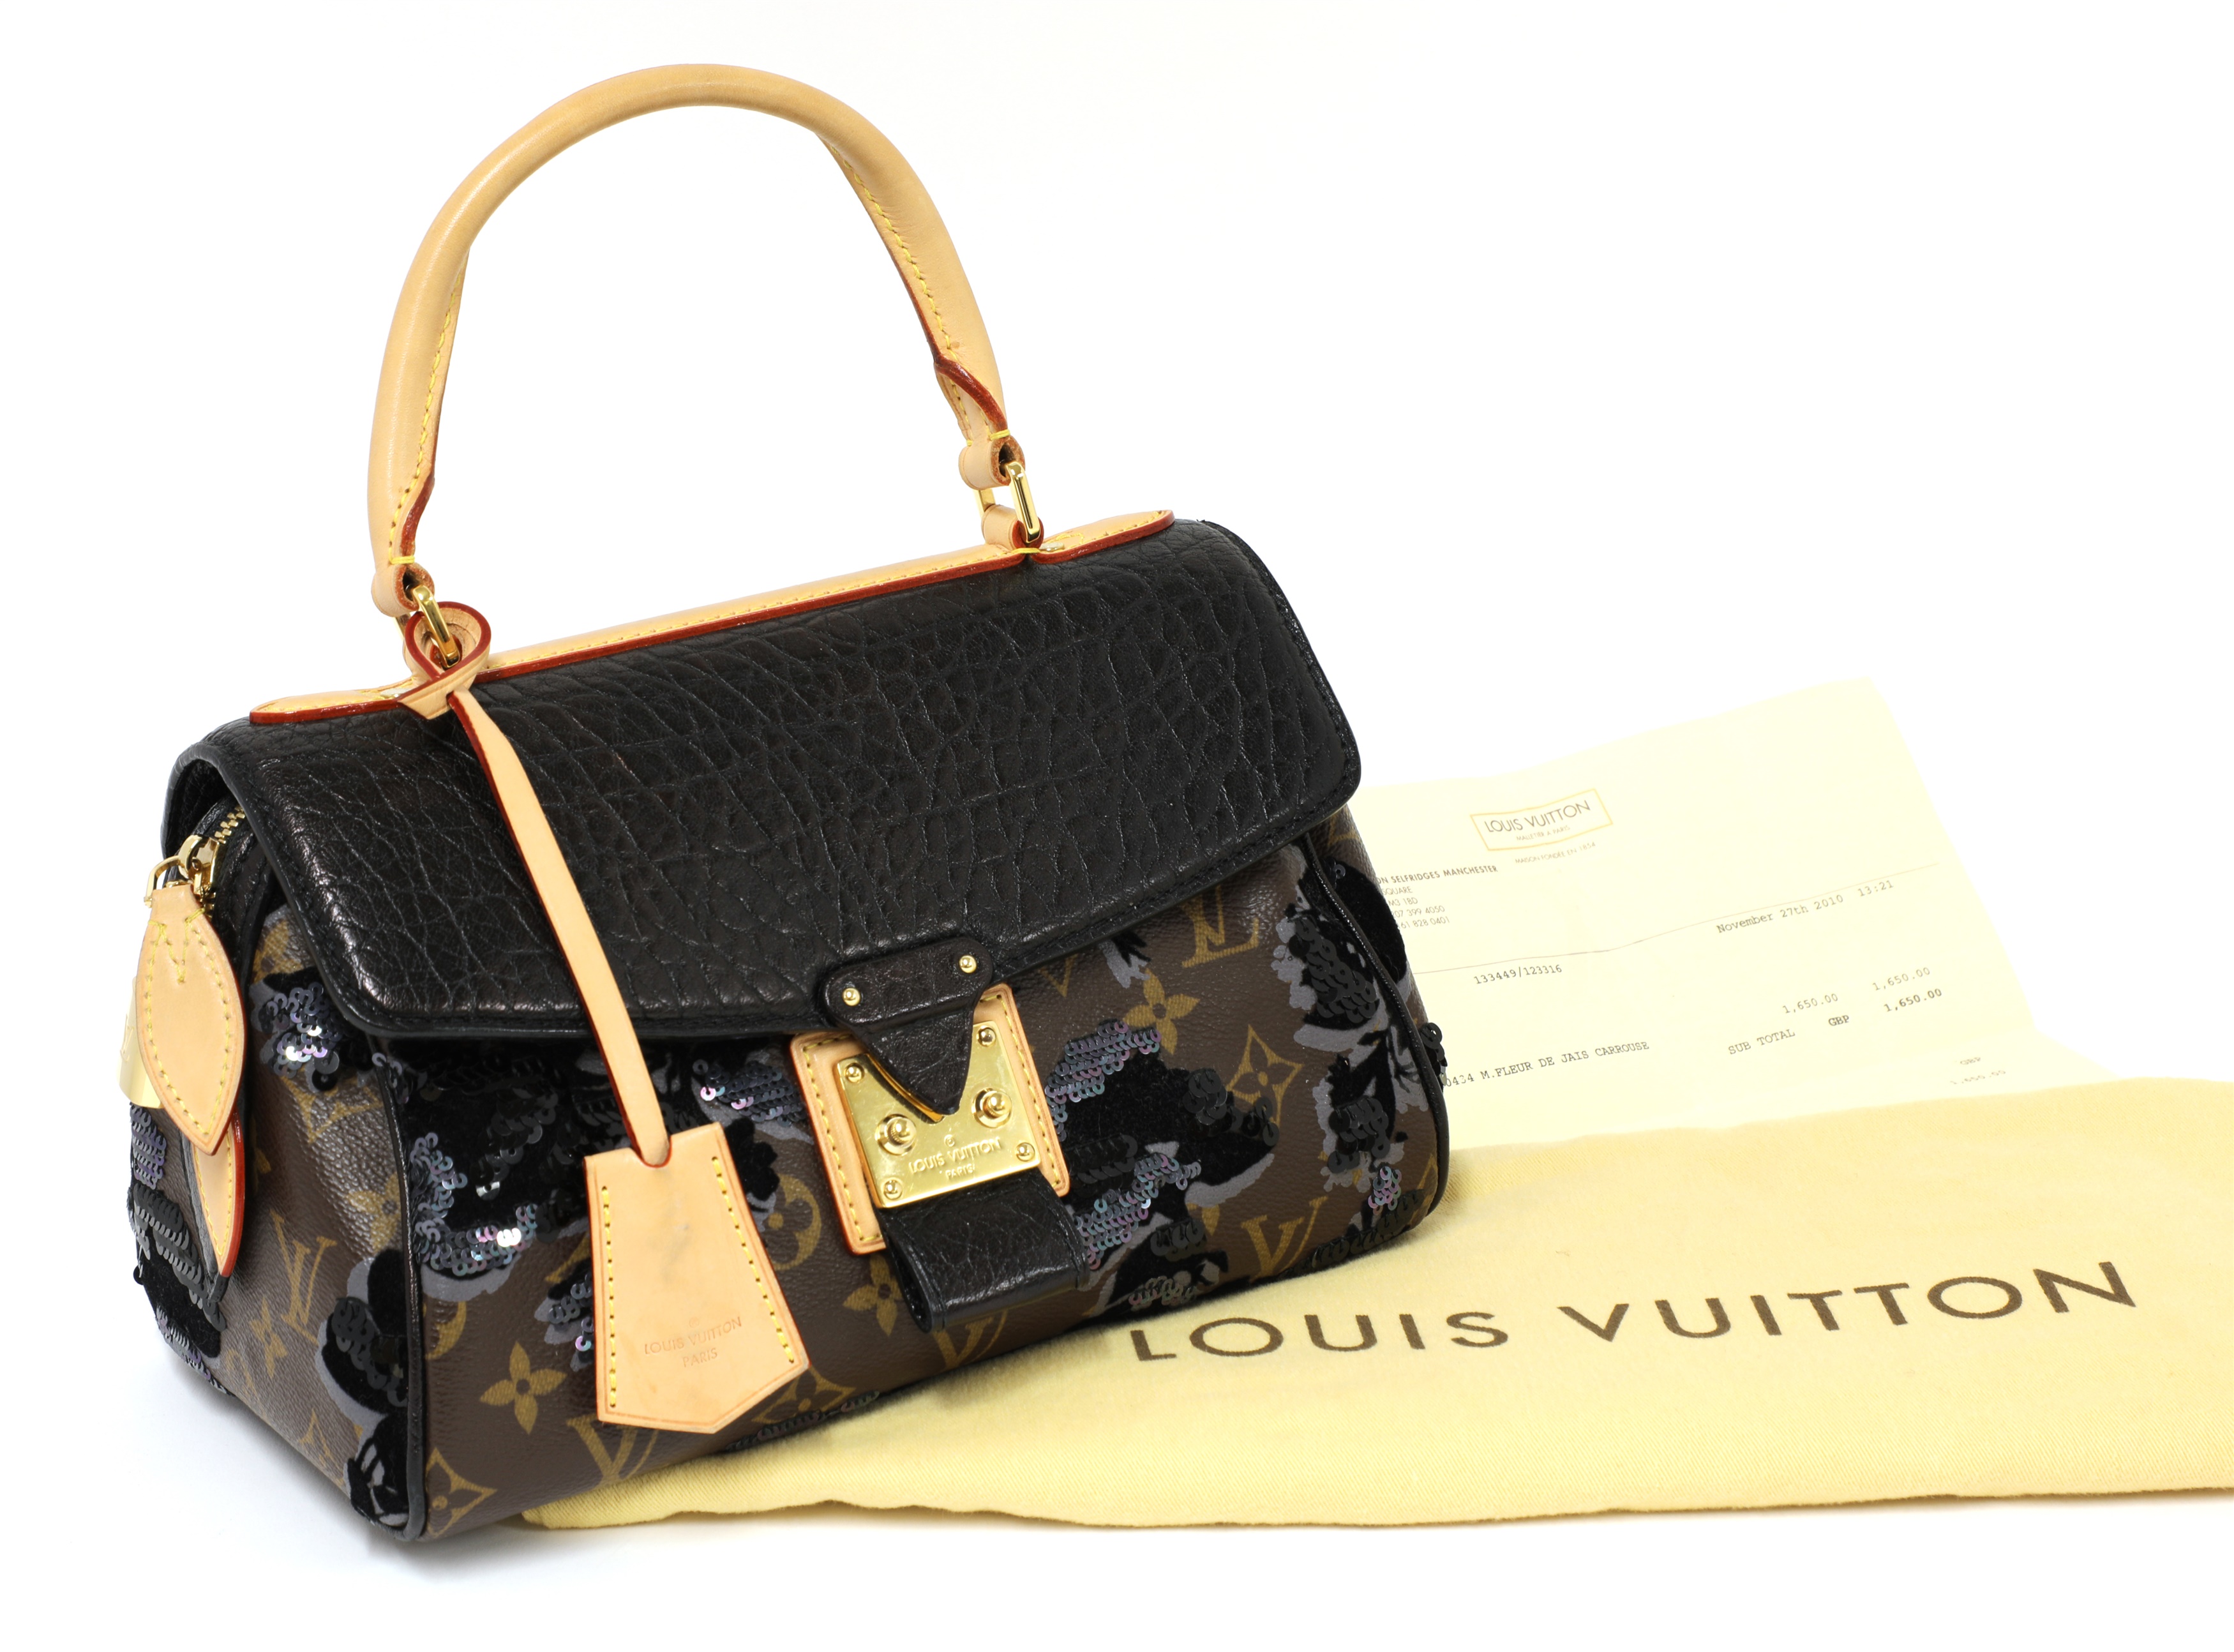 LOUIS VUITTON Fleur De Jais Carrousel Monogram Leather Satchel Bag Bla